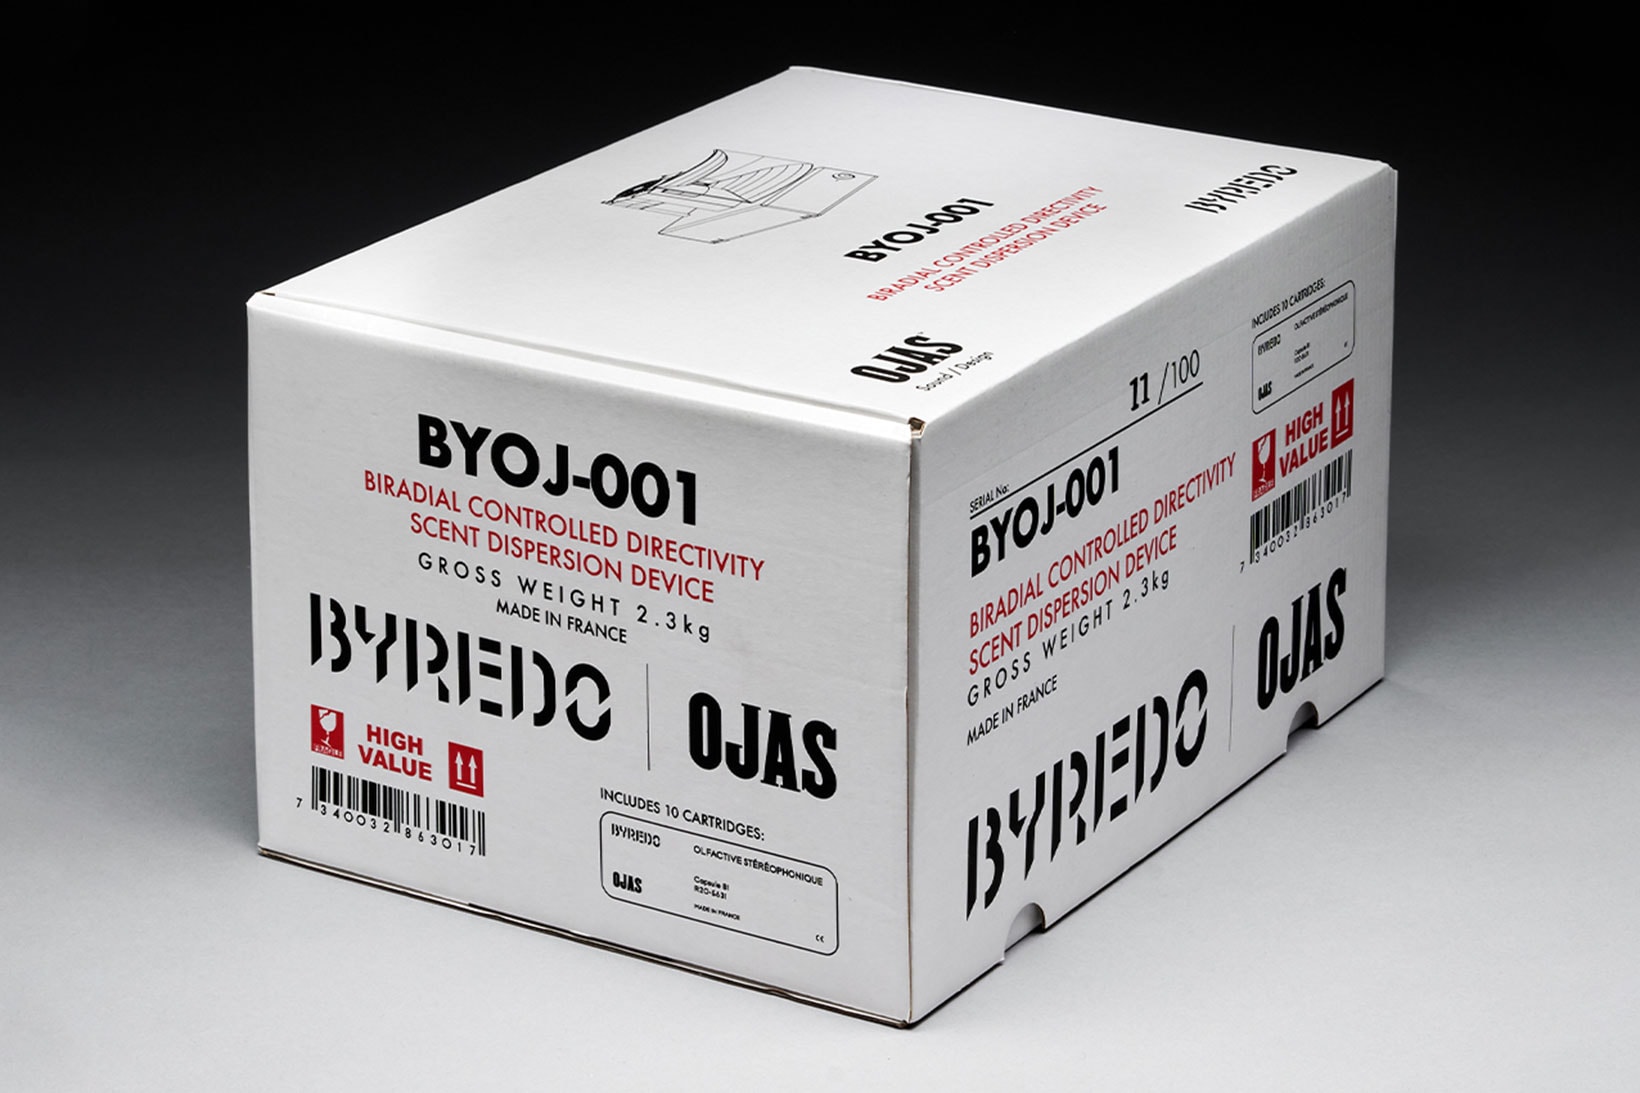 Byredo OJAS Home Diffuser Scent Machine Collaboration Box